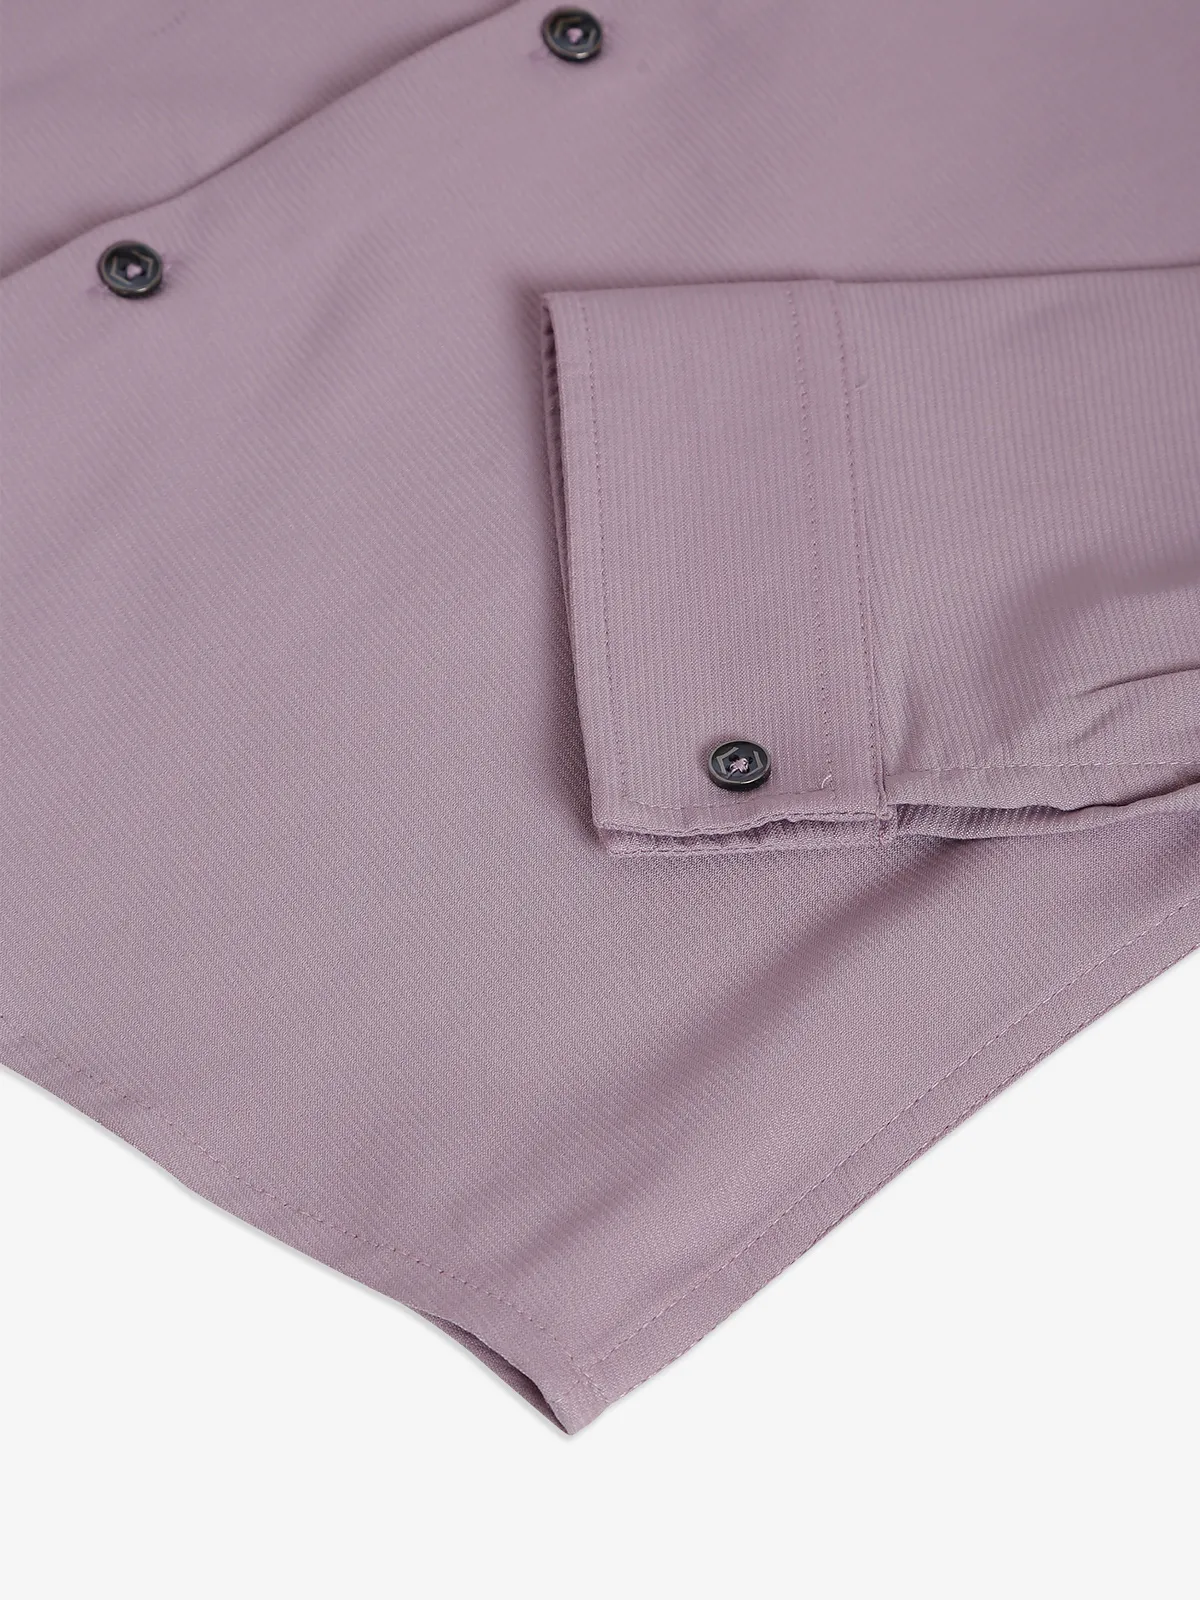 Blazo mauve purple plain shirt